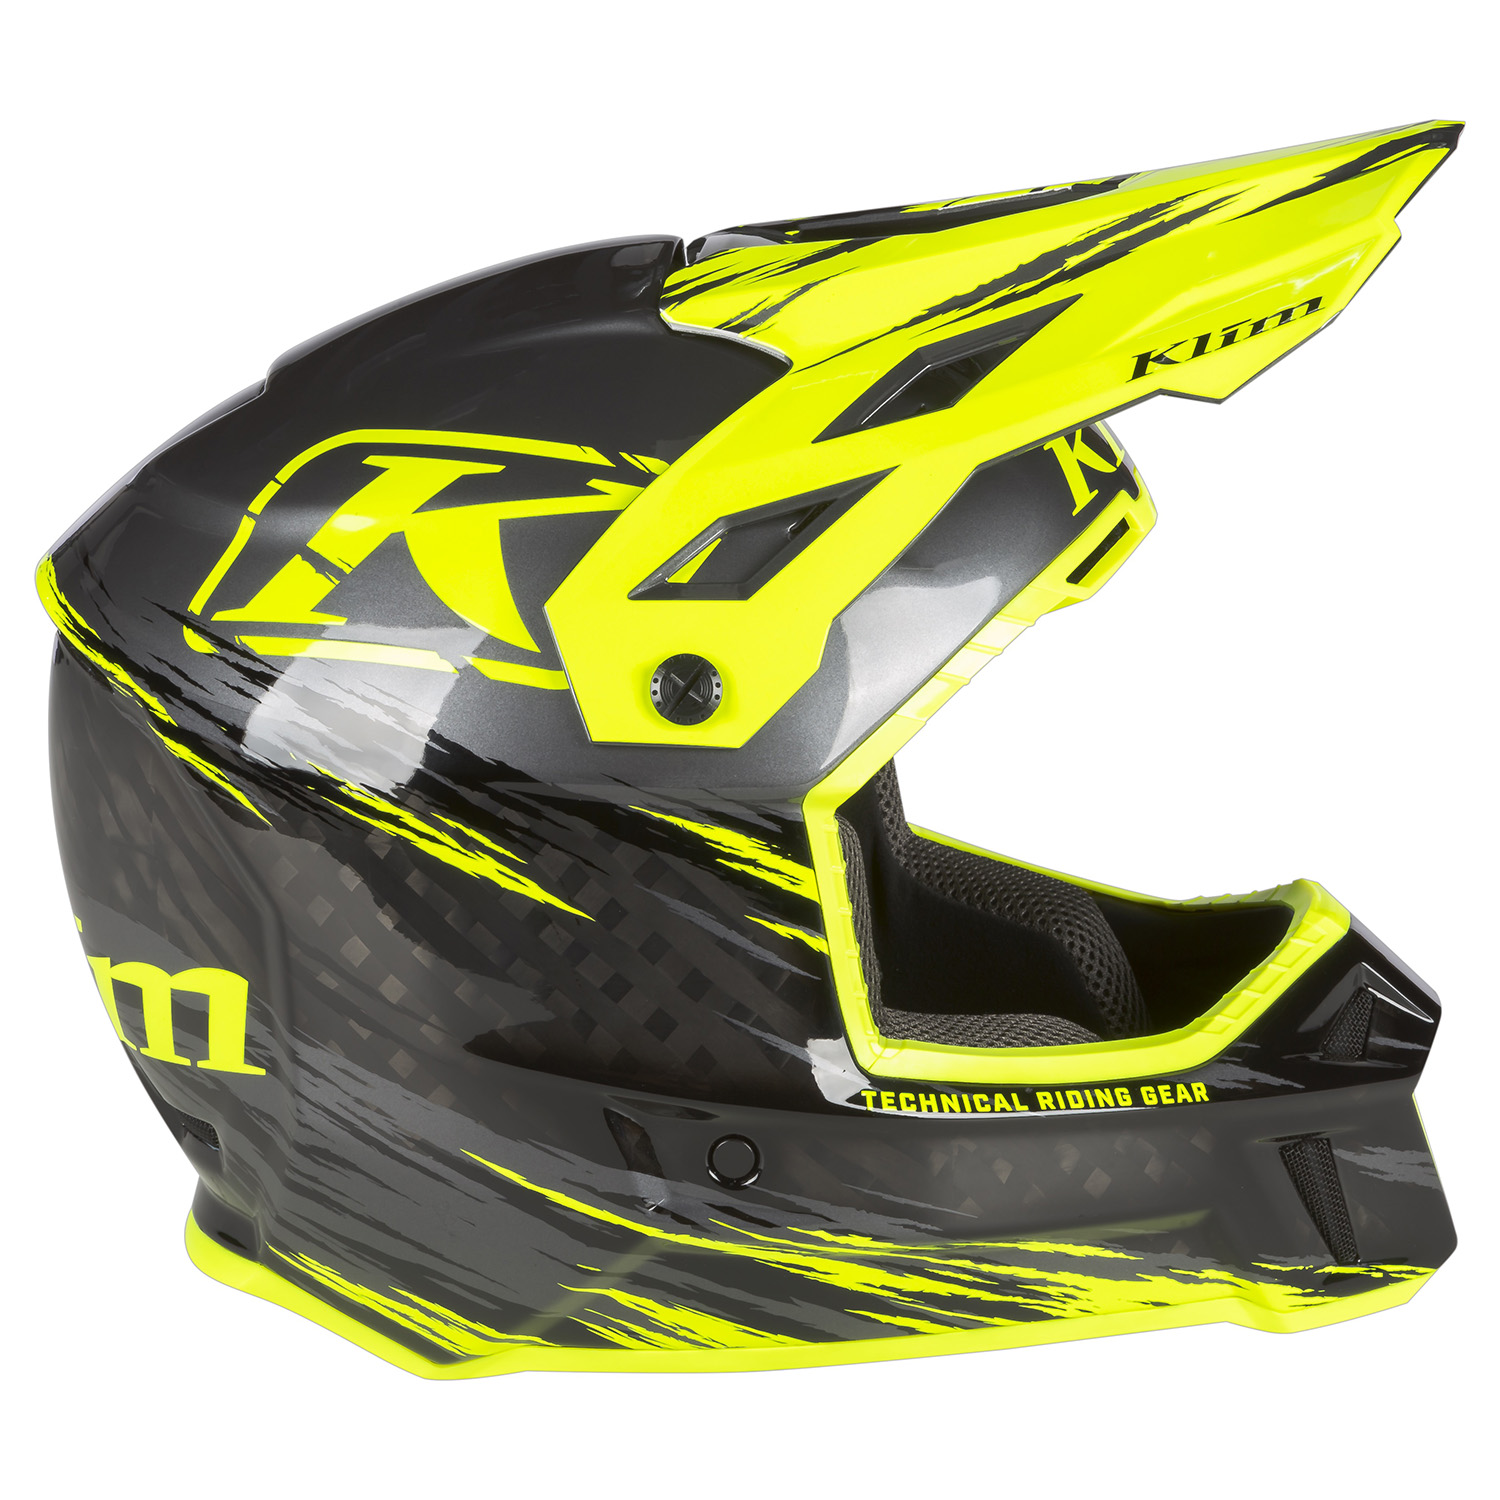 F3 Carbon Pro Helmet ECE